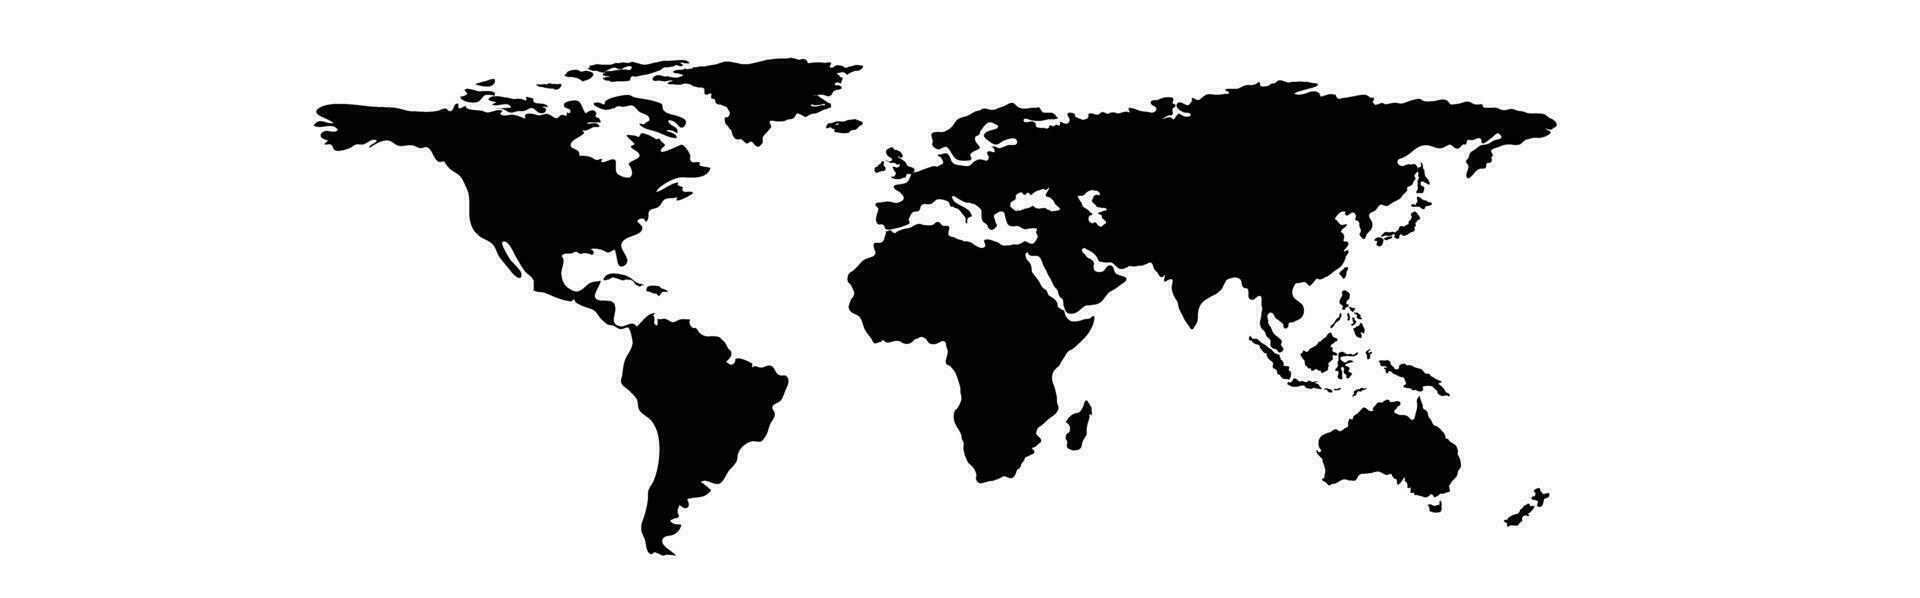 monde carte la géographie globe Terre vecteur